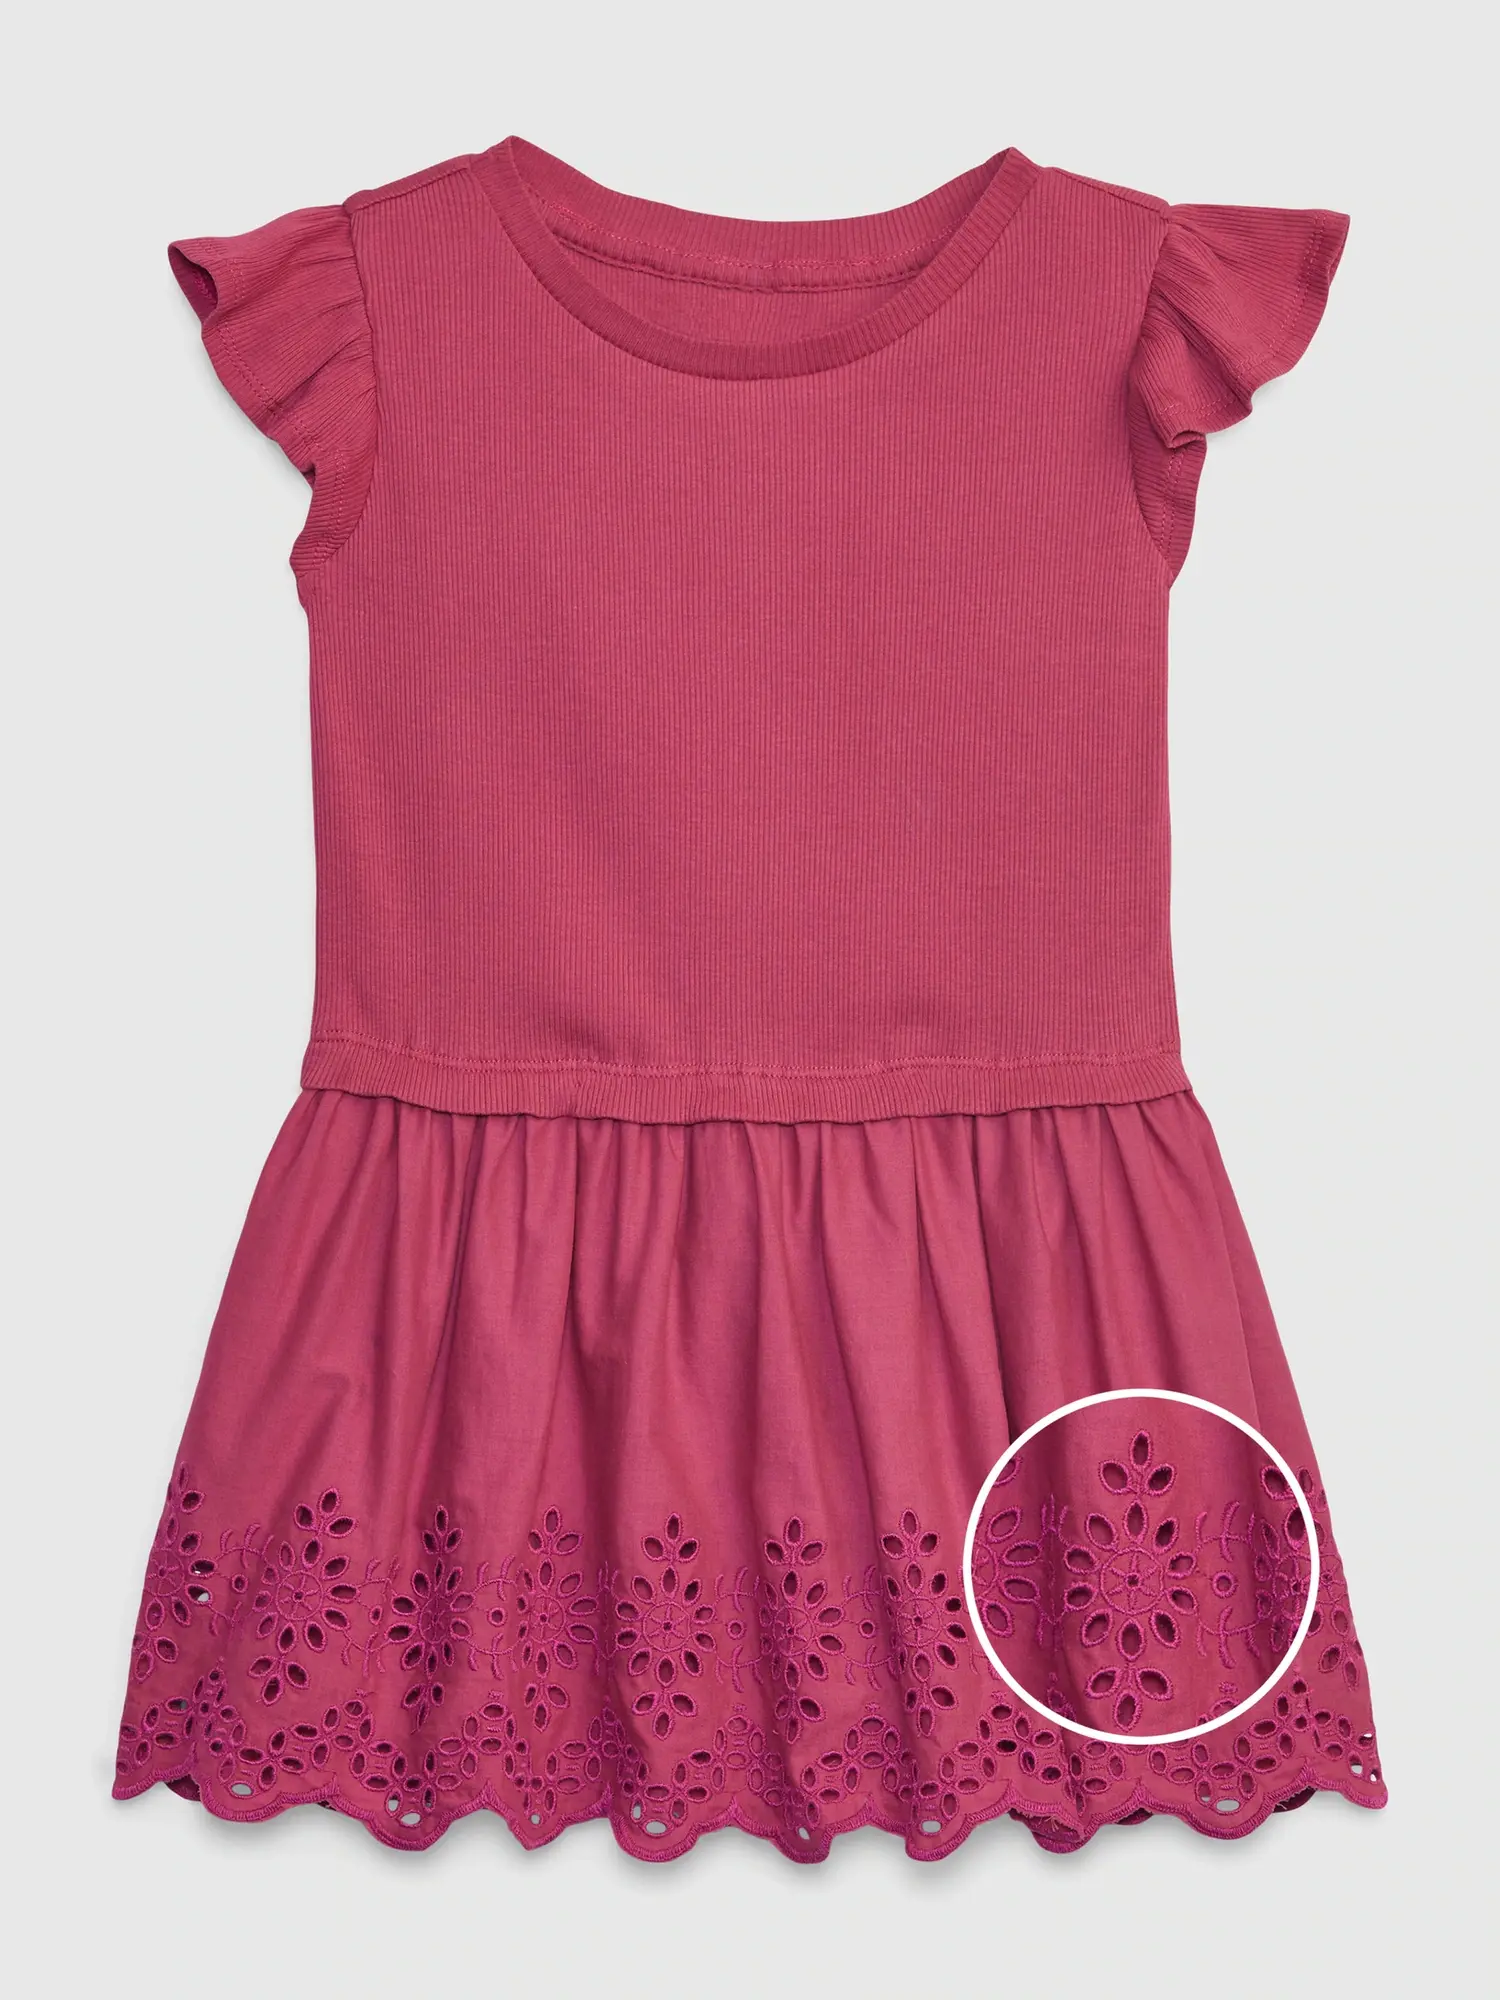 Gap Toddler Eyelet Dress pink. 1